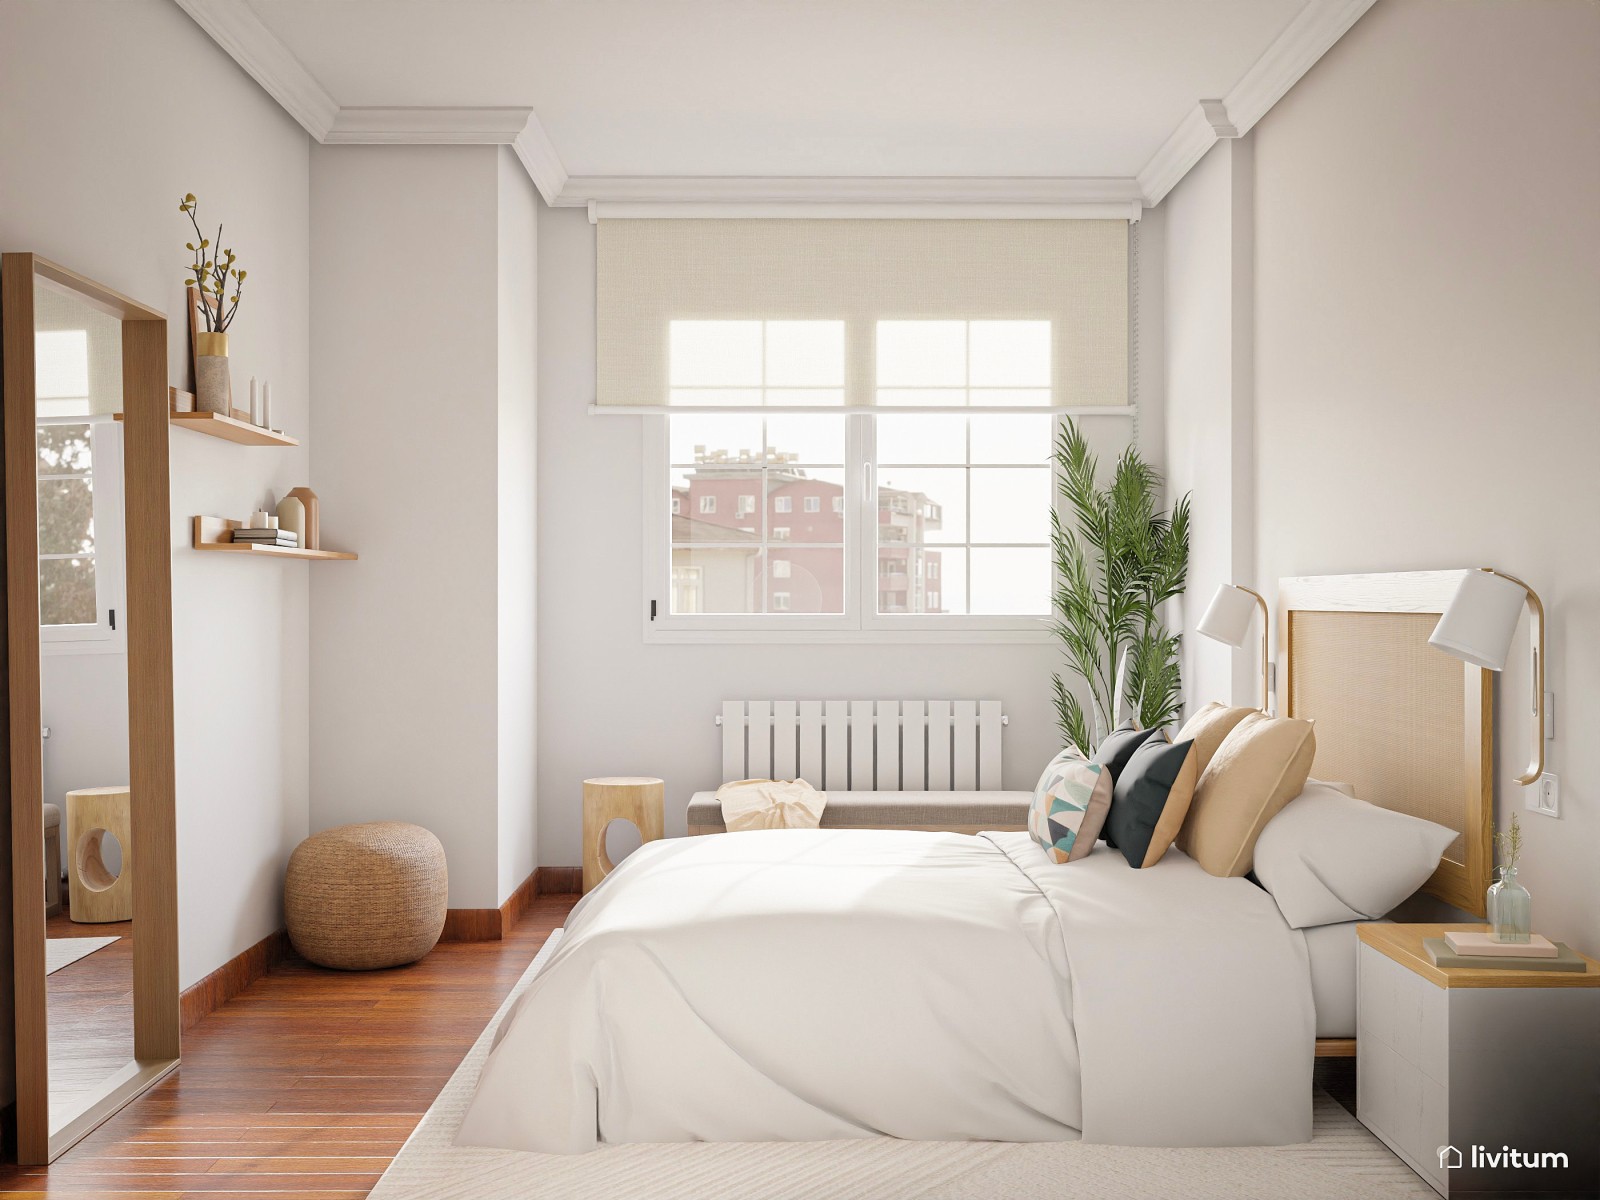 Elegante dormitorio nórdico en blanco , madera y verde 